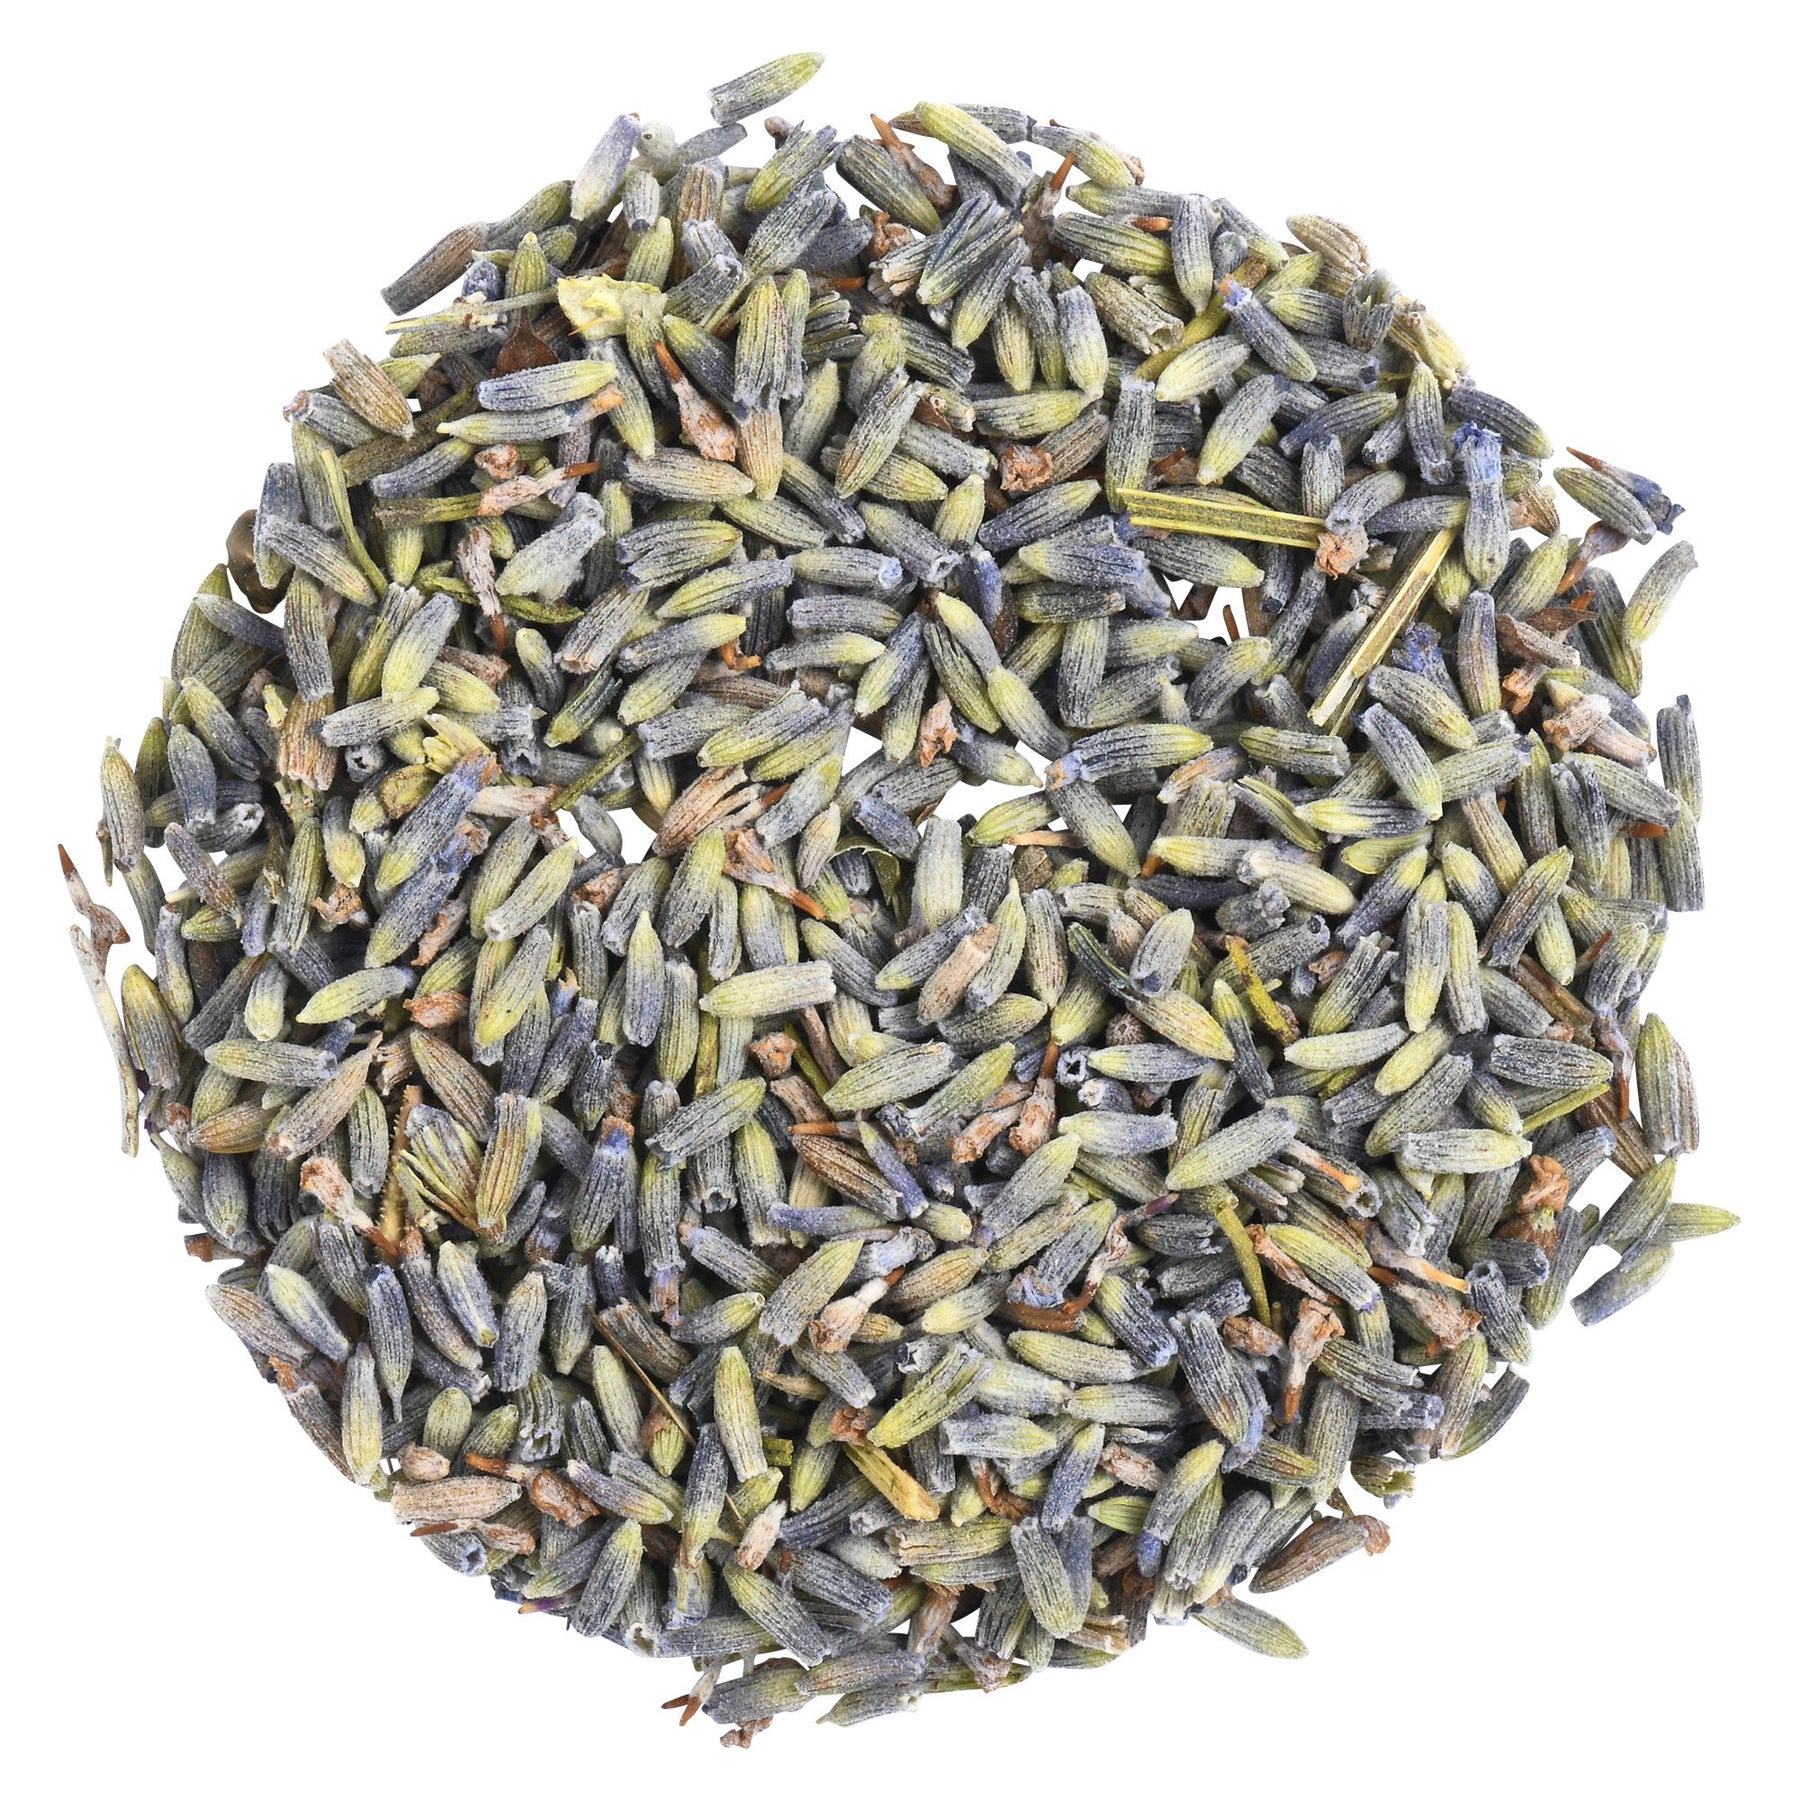 Biokoma Lavender (Lavandula) Organic Dried Flowers 50g 1.76oz